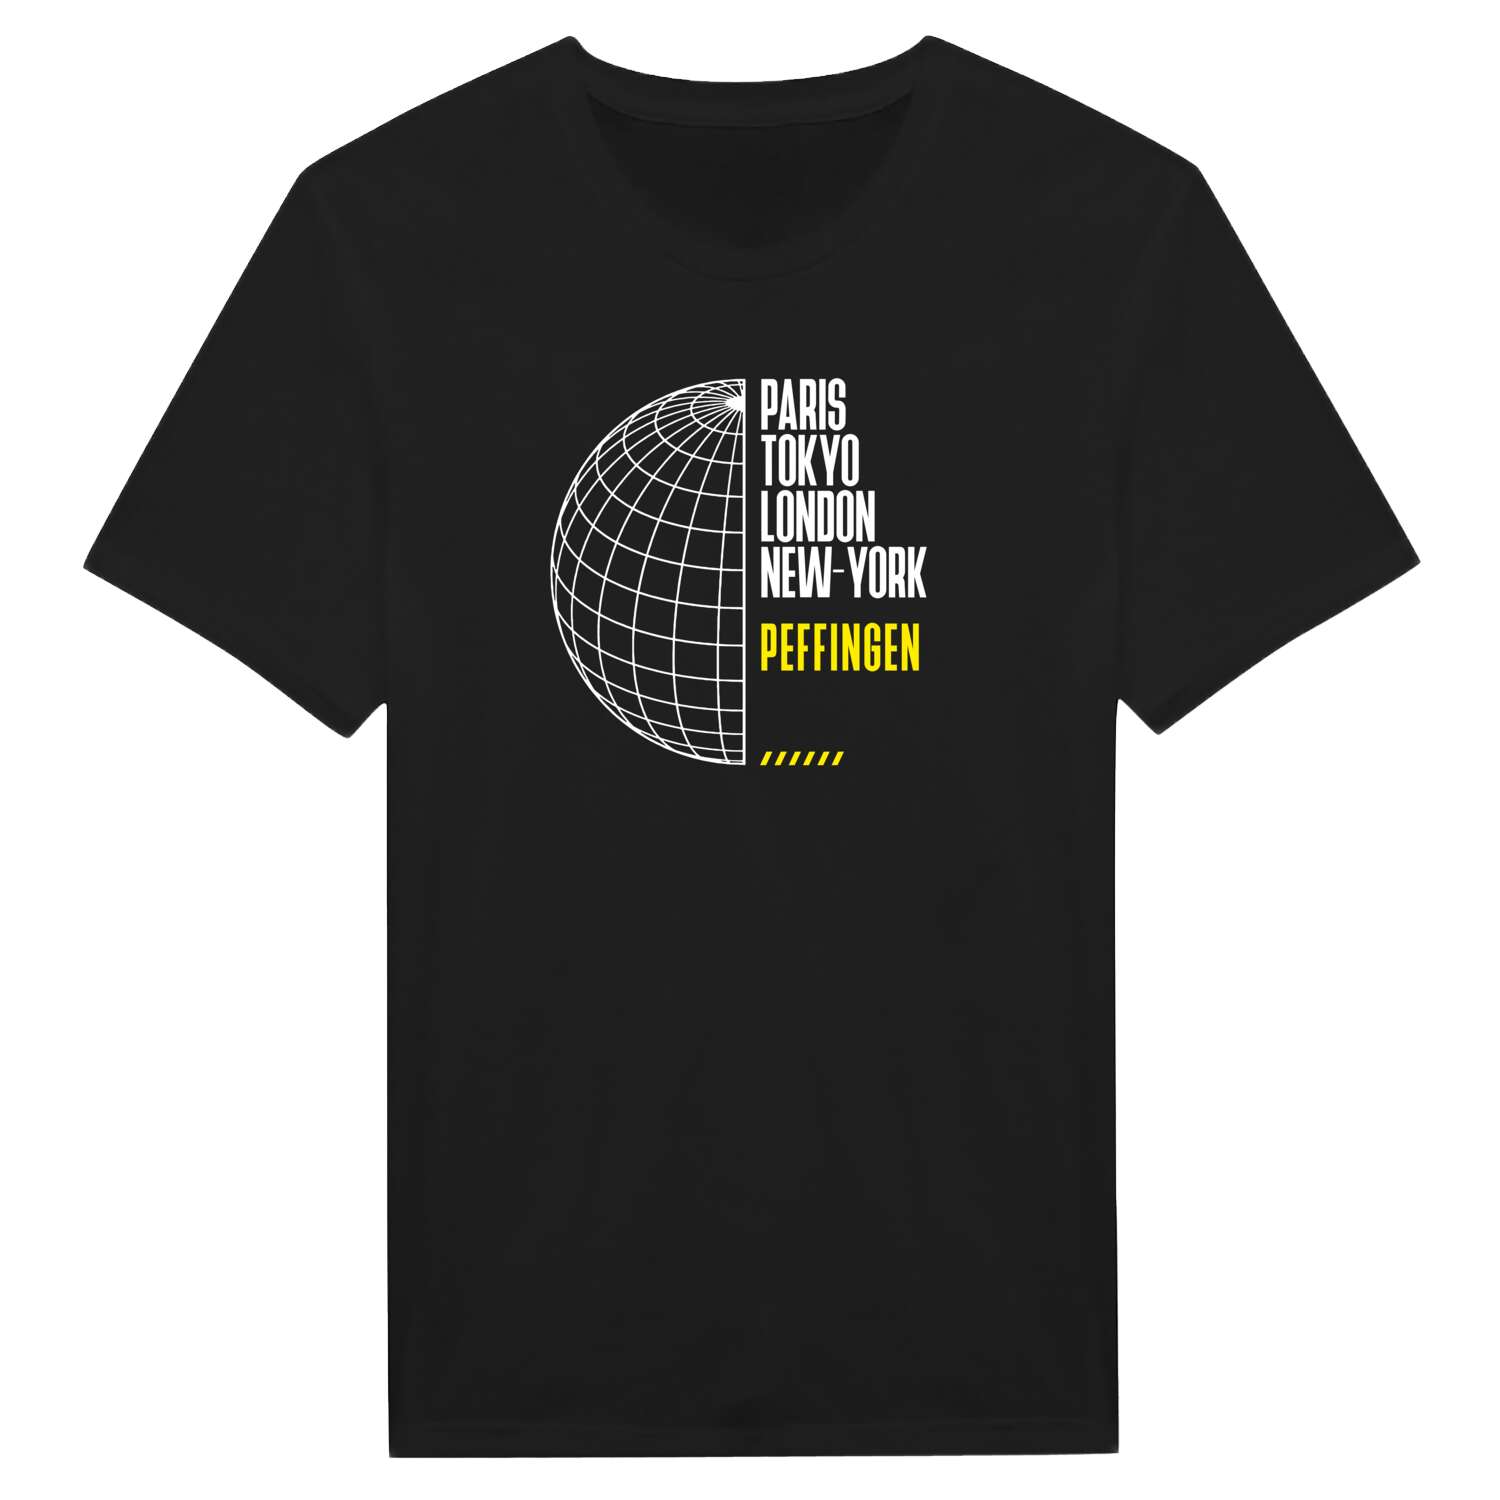 Peffingen T-Shirt »Paris Tokyo London«